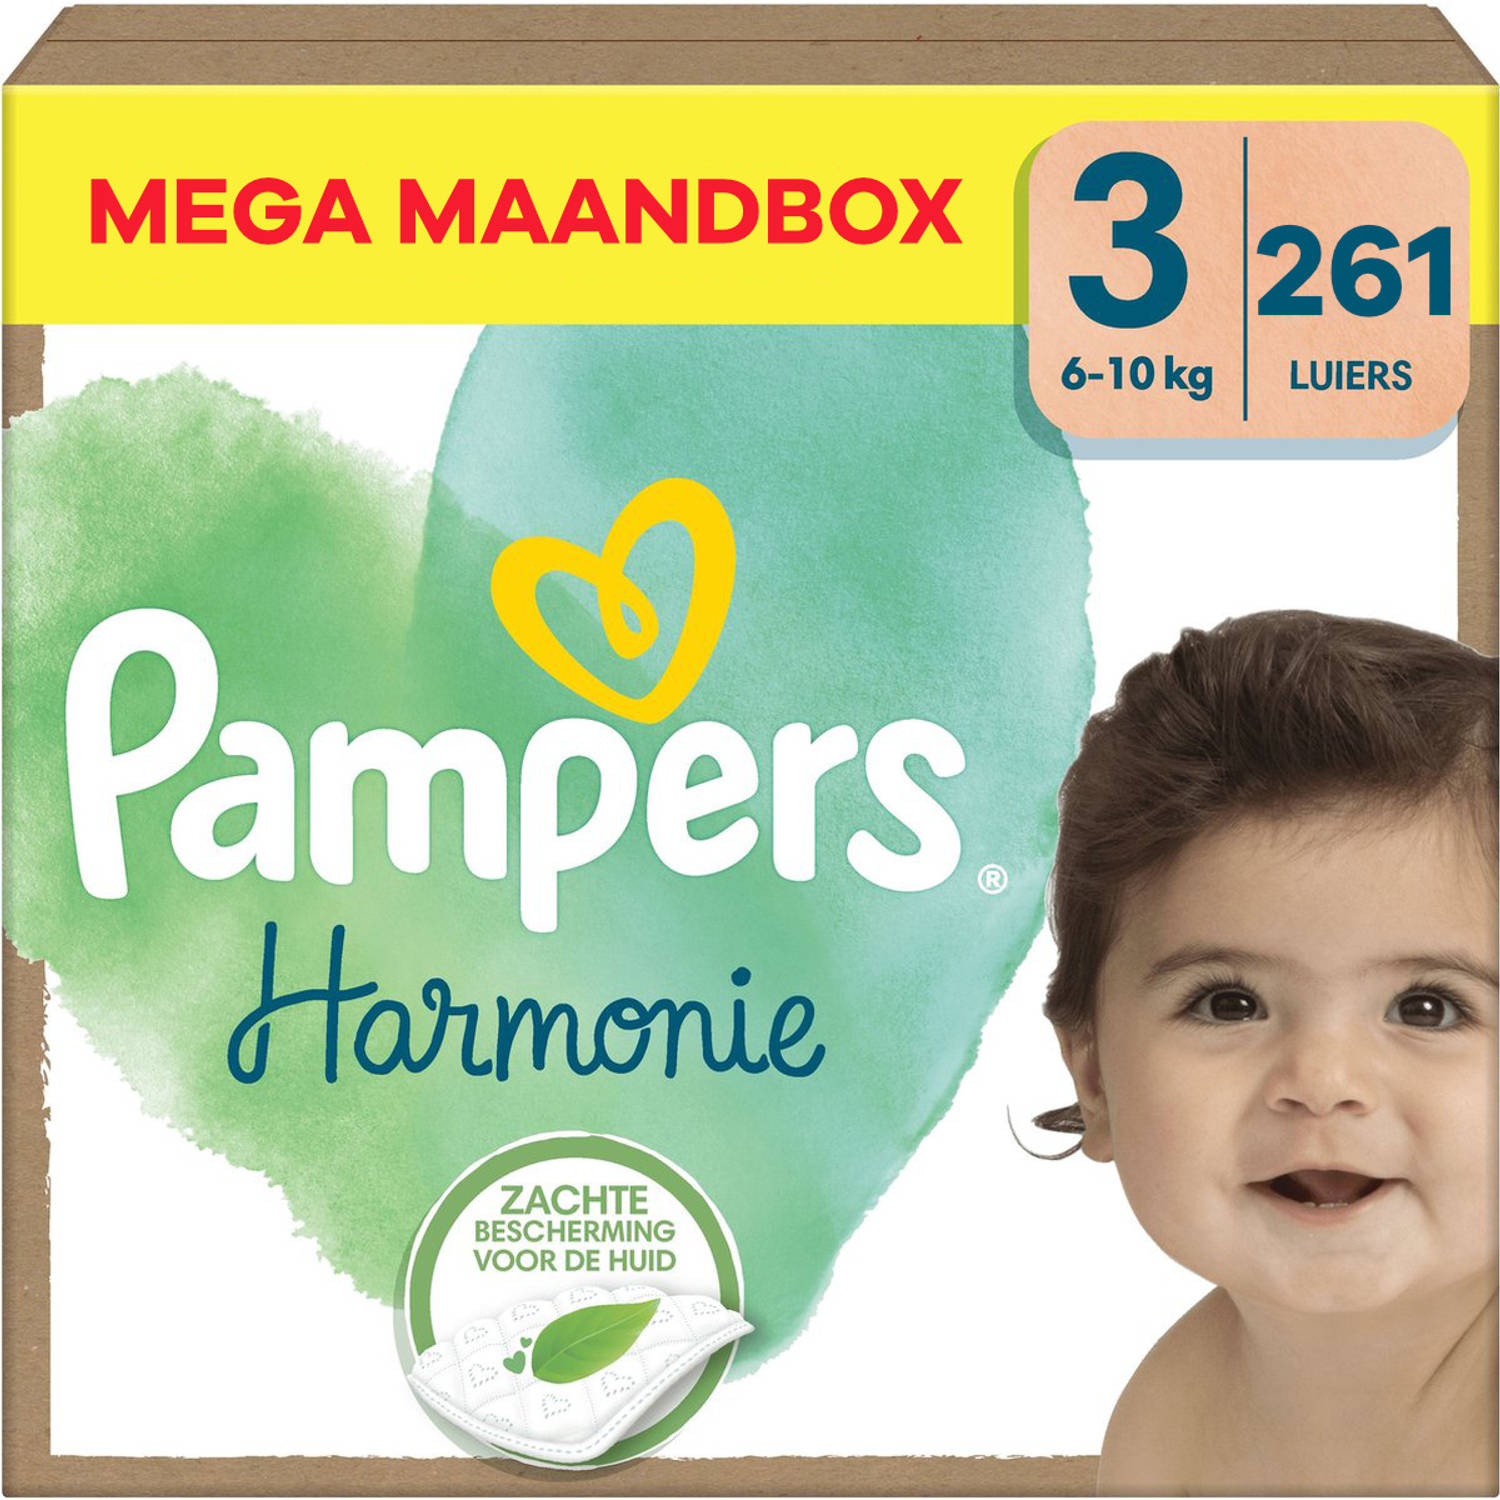 Pampers Harmonie Maat 3 Mega Maandbox 261 stuks 6-10 KG